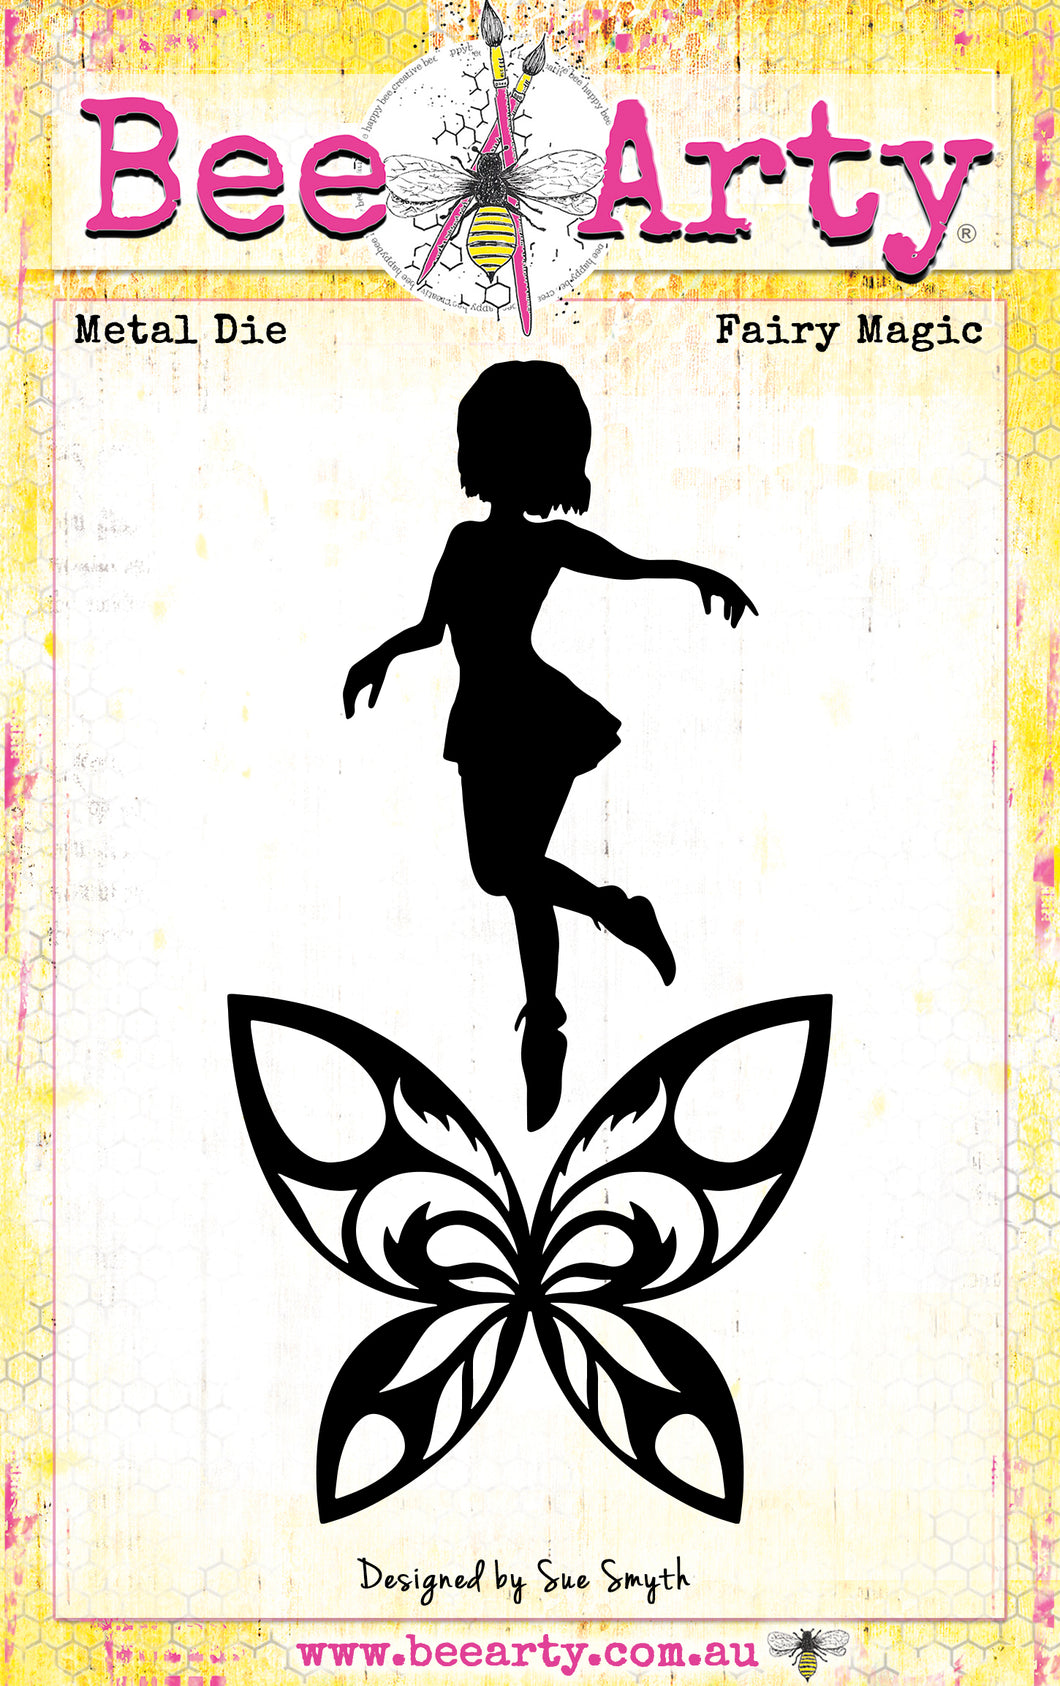 Fairy Magic - Metal Die